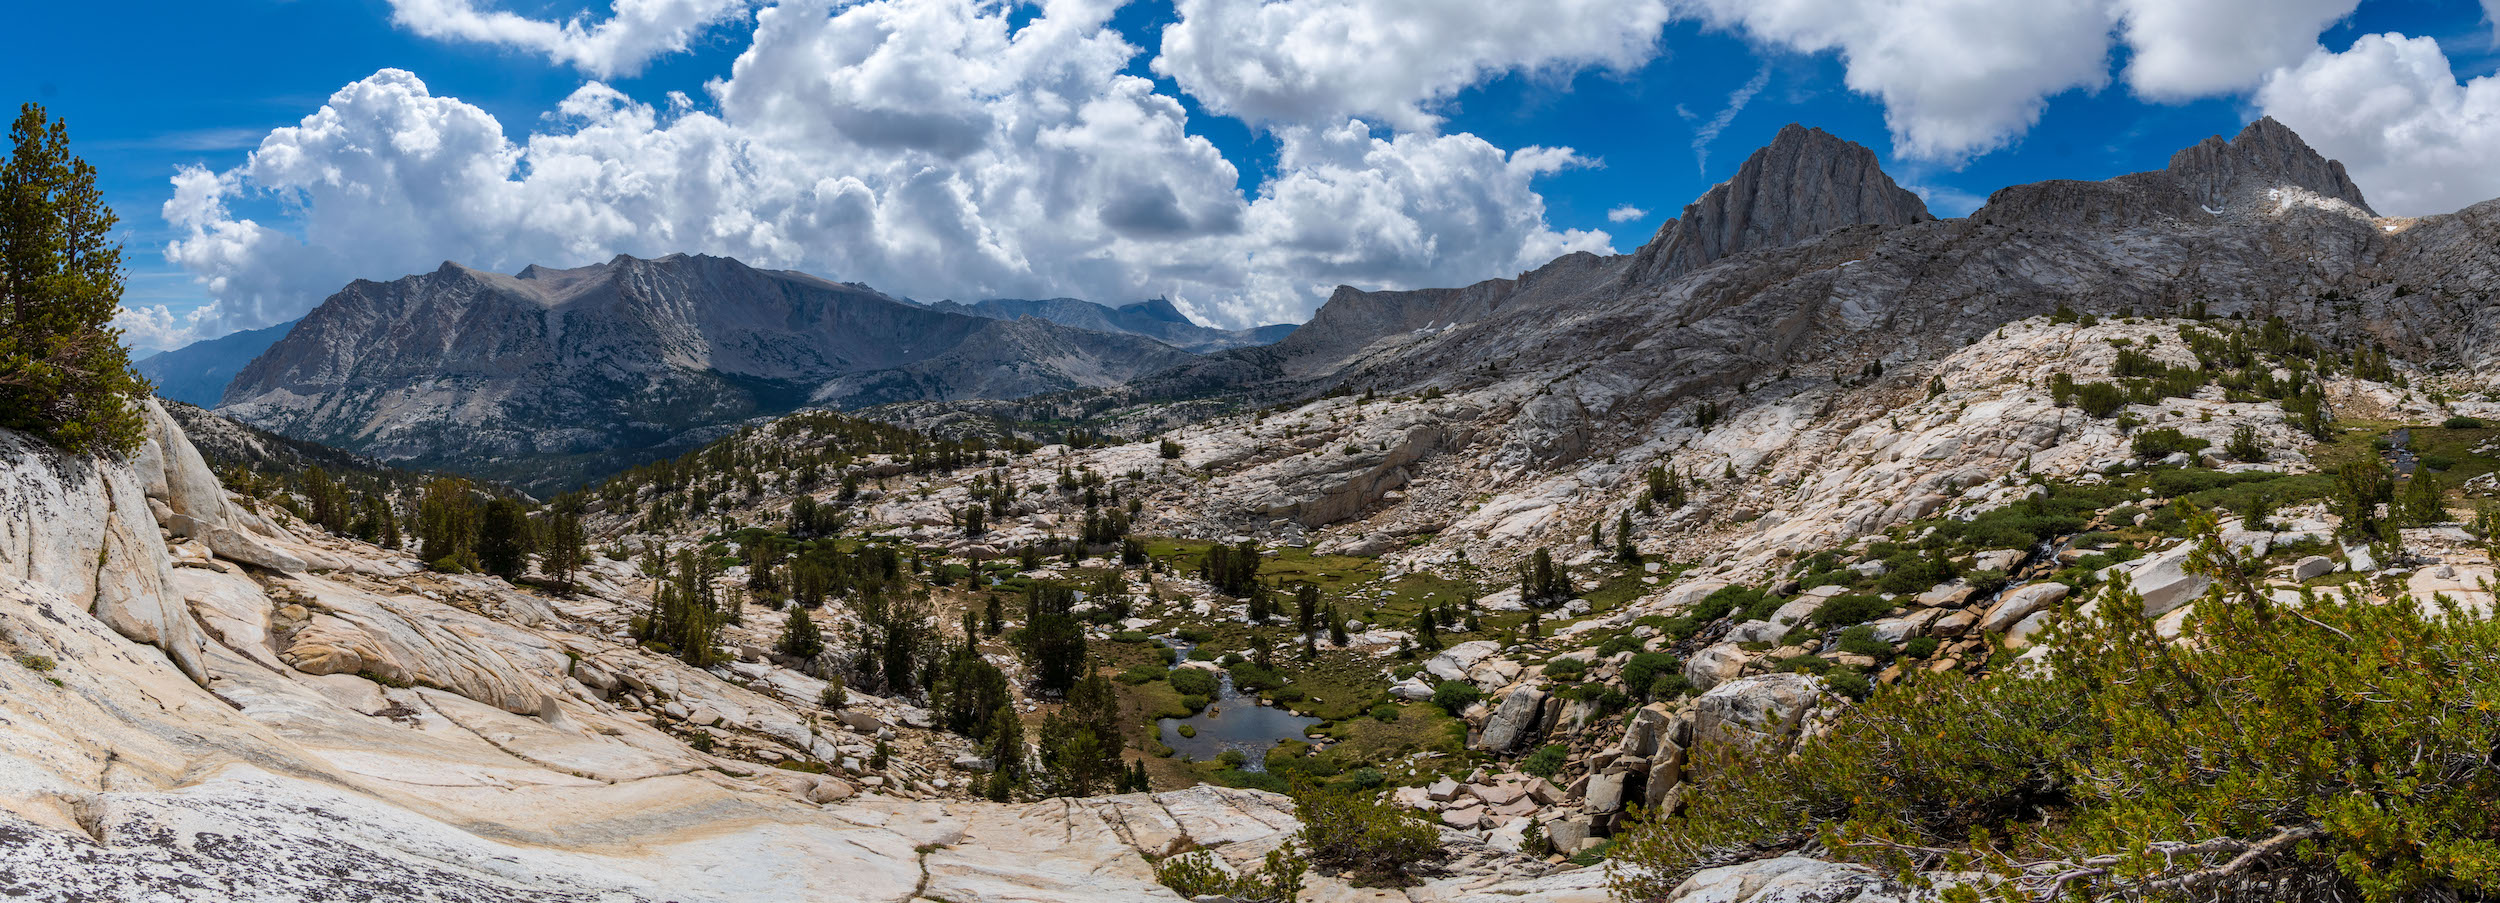 Granite Park Panorama, Eastern Sierras